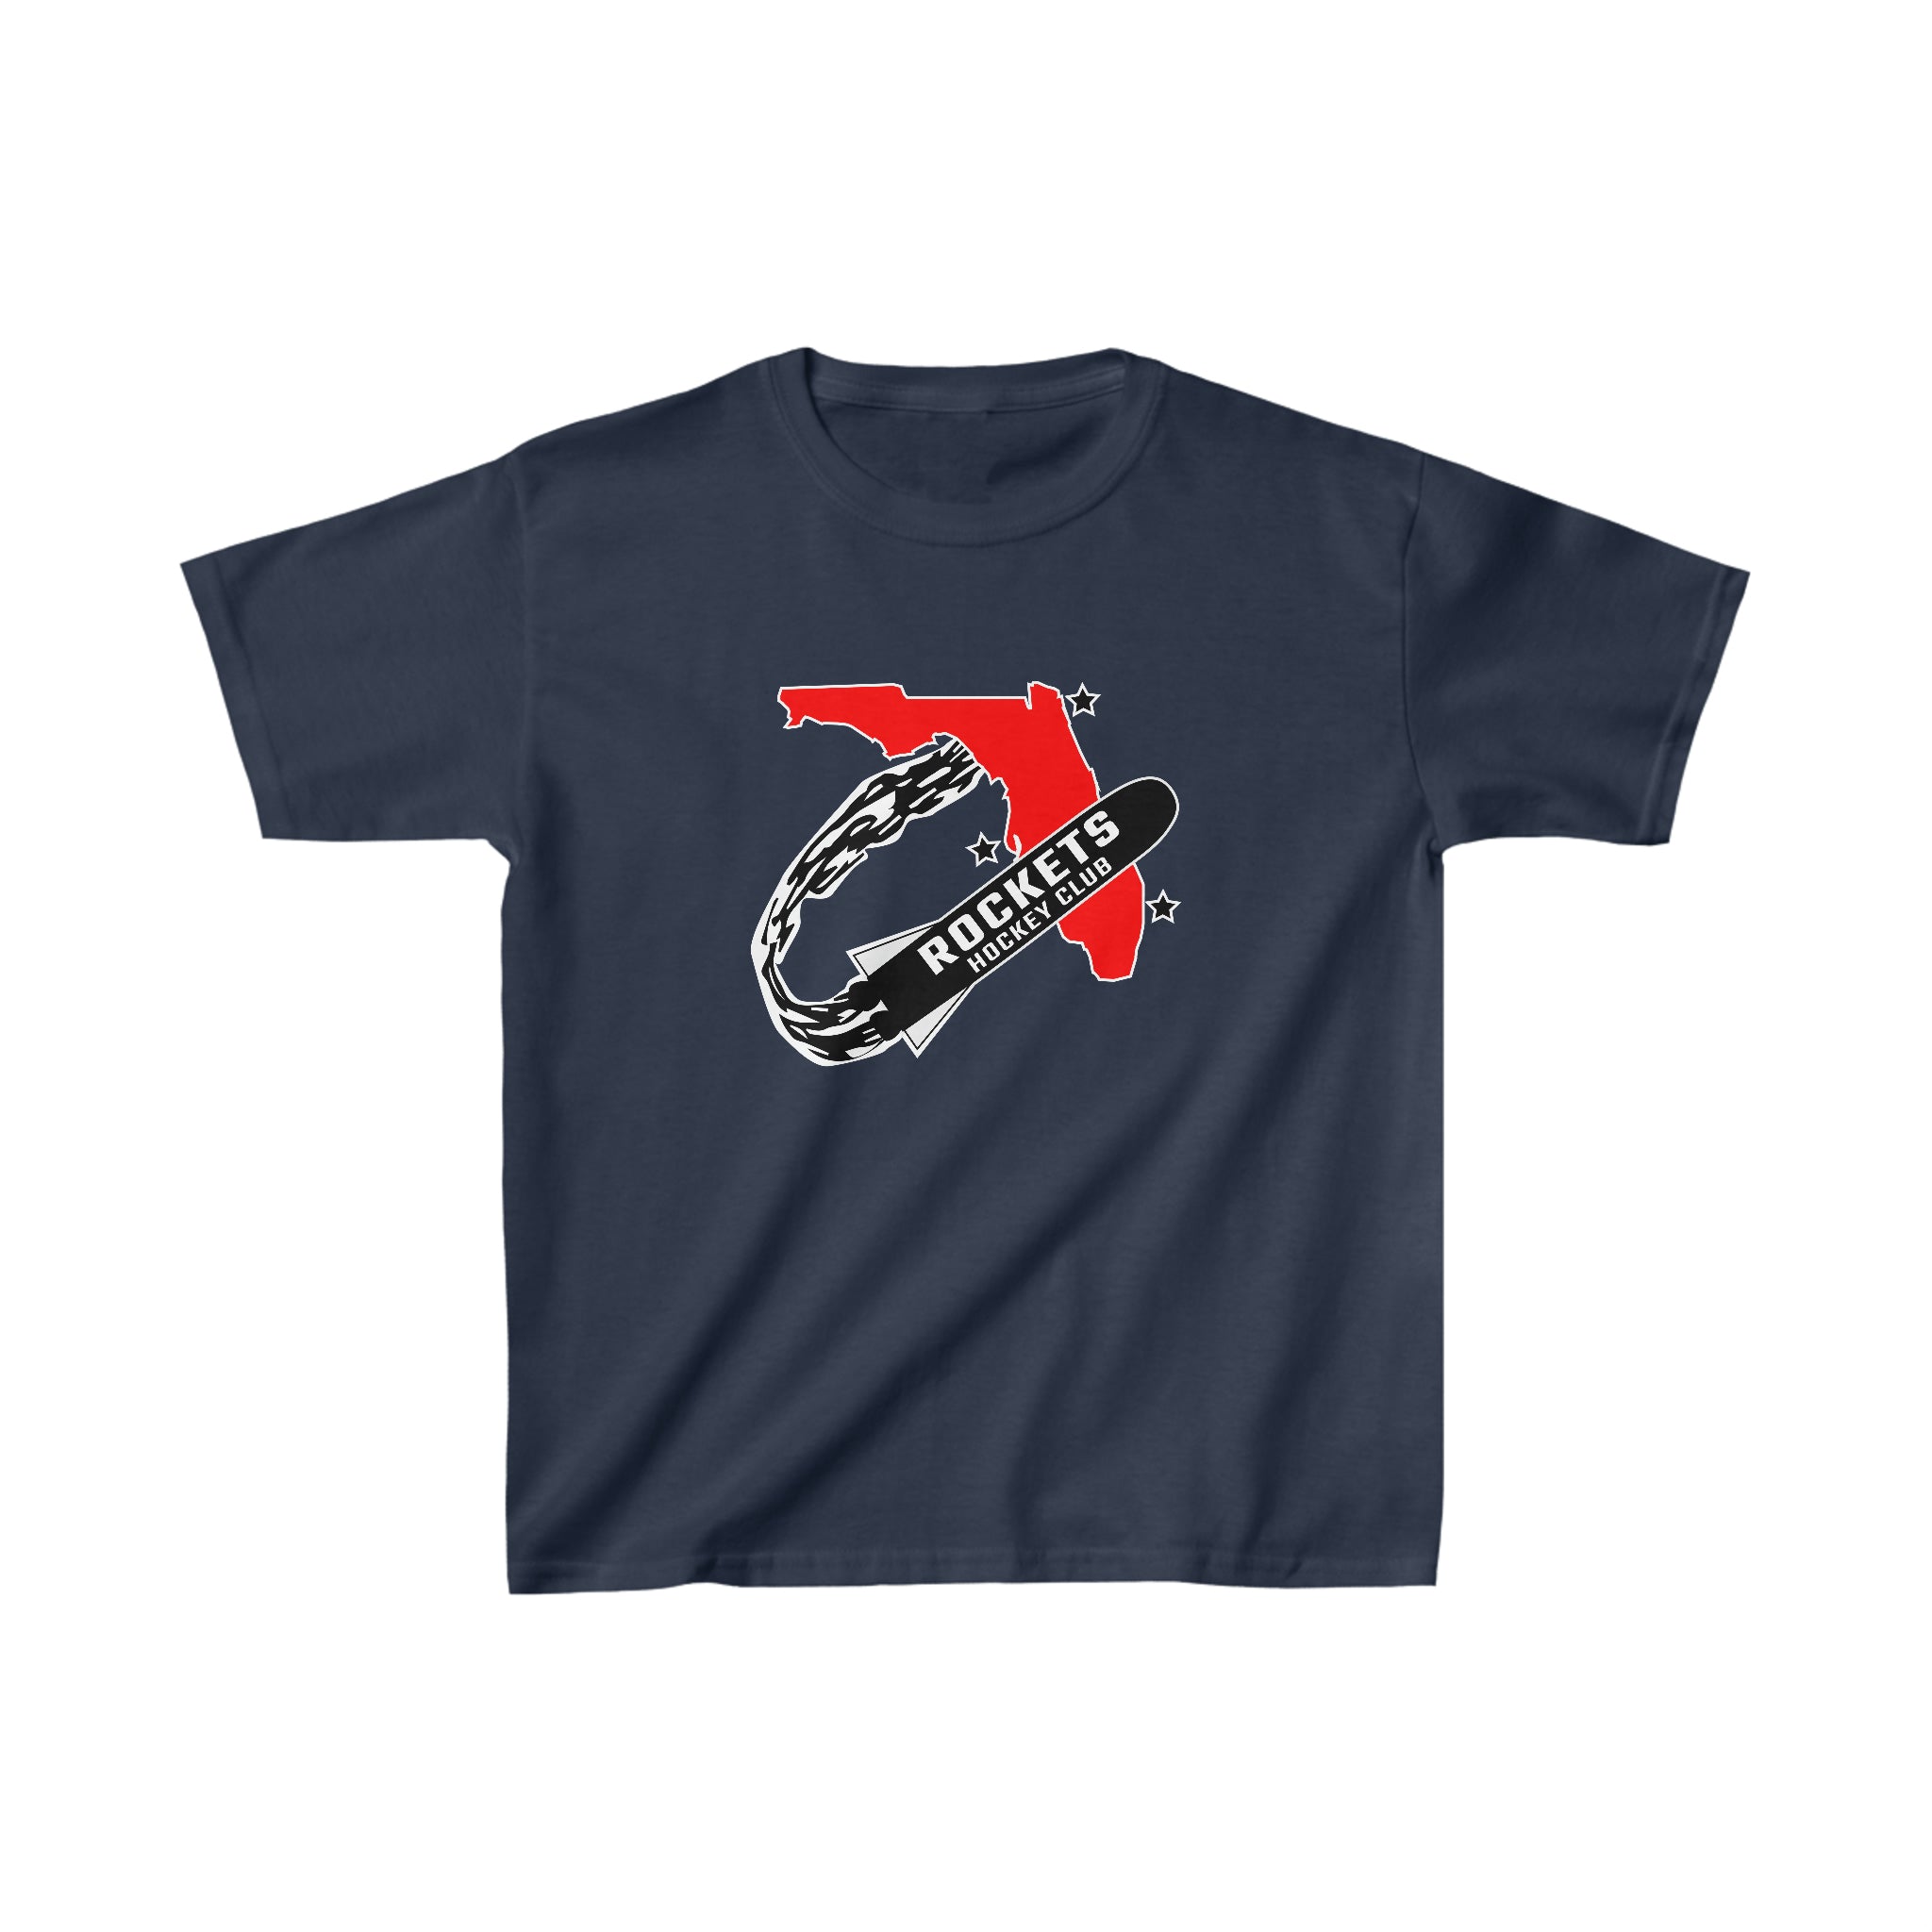 Florida Rockets T-Shirt (Youth)